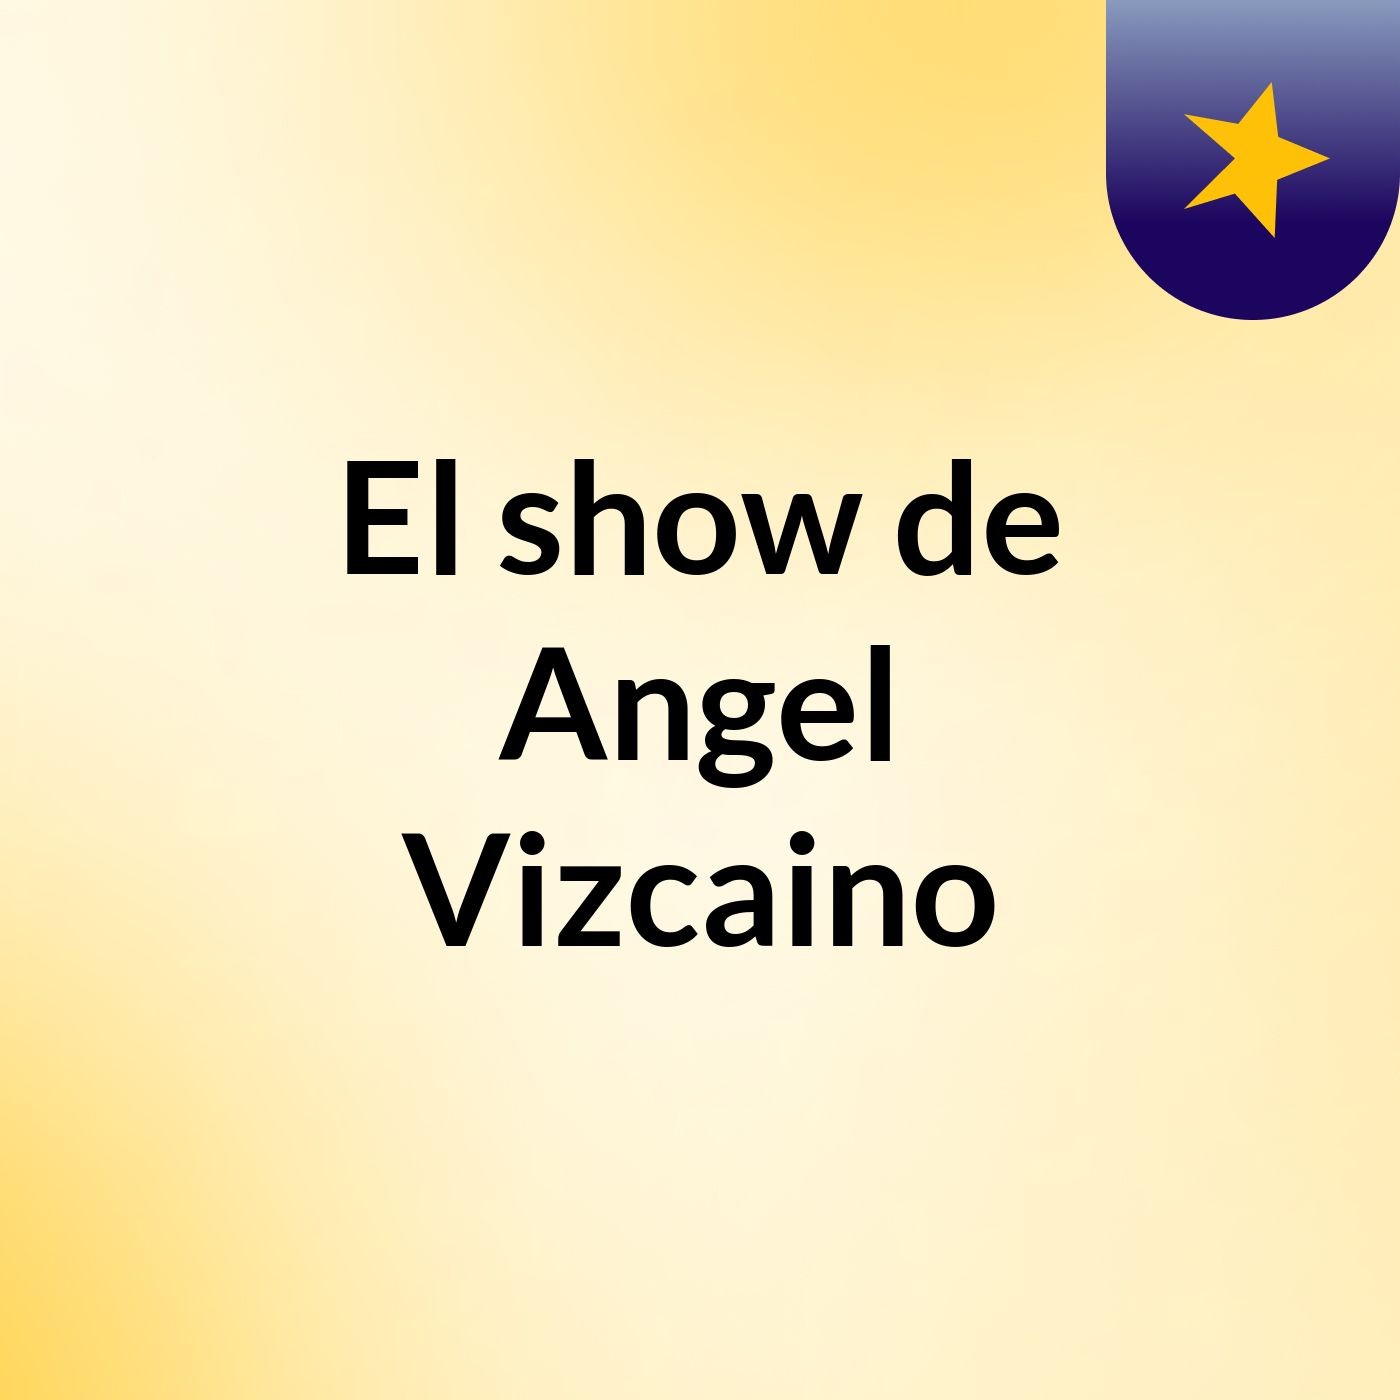 El show de Angel Vizcaino